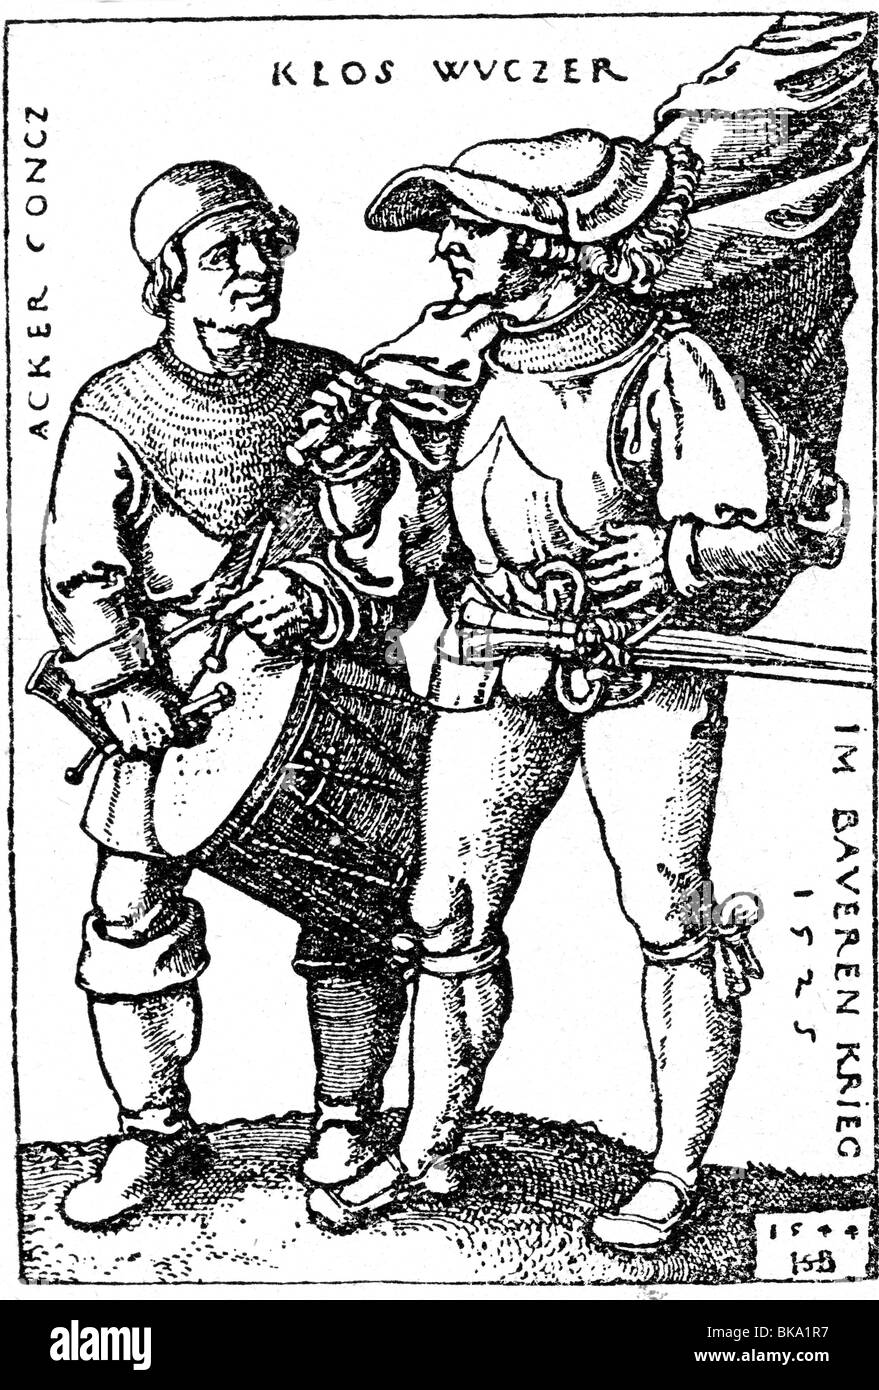 Les événements, La Guerre des paysans allemands, 1524 - 1526, 'Acker Concz Wuczer Baveren Klos und im Krieg 1525', gravure sur cuivre par Hans Sebald Beham, 1544, l'artiste n'a pas d'auteur pour être effacé Banque D'Images